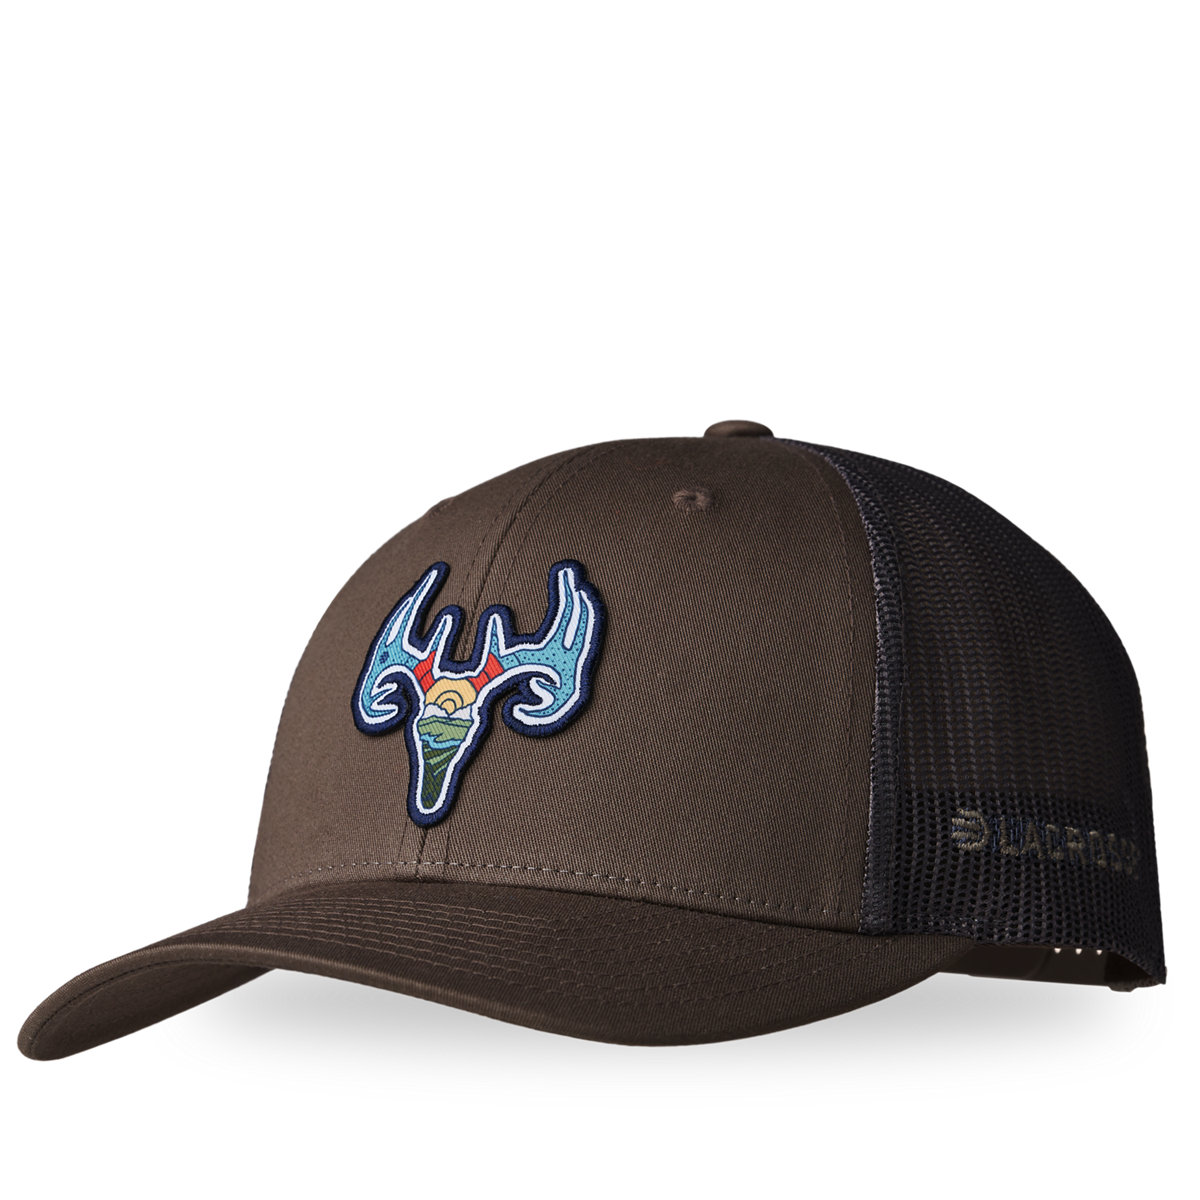 Trucker Footwear Choc LaCrosse - Brown Hat - Deer Chip/Grey LaCrosse